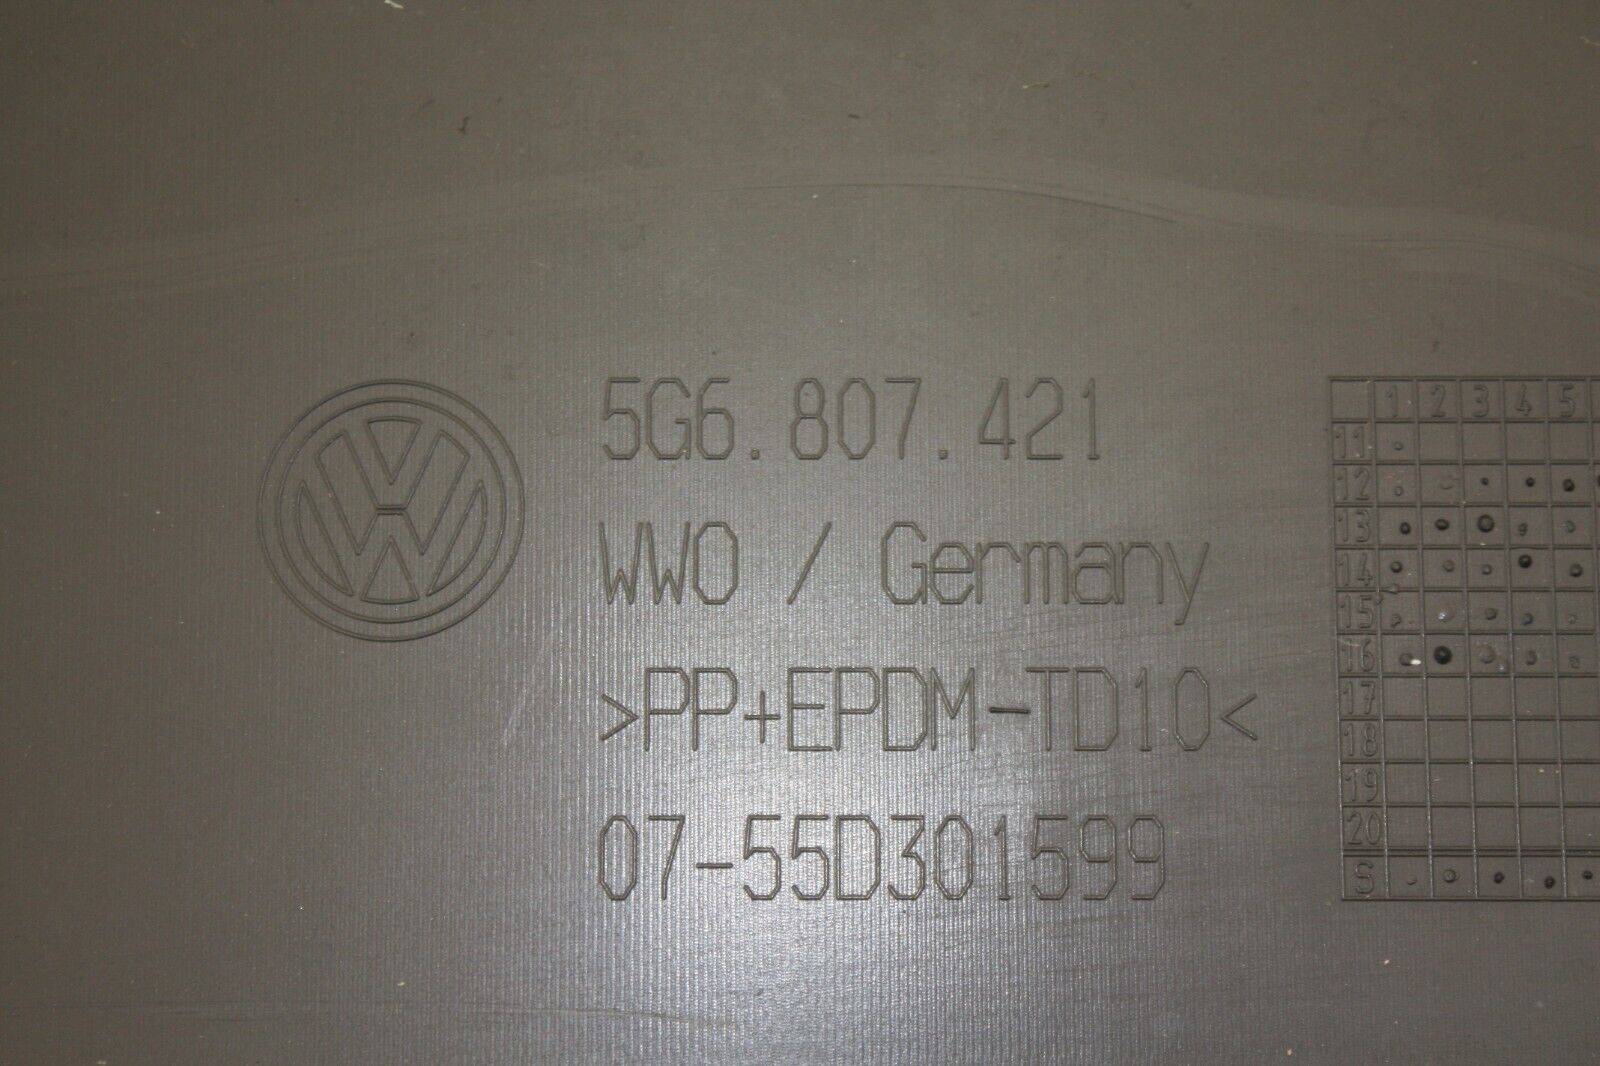 VW-Golf-Rear-Bumper-2013-TO-2017-5G6807421-Genuine-176329830167-10